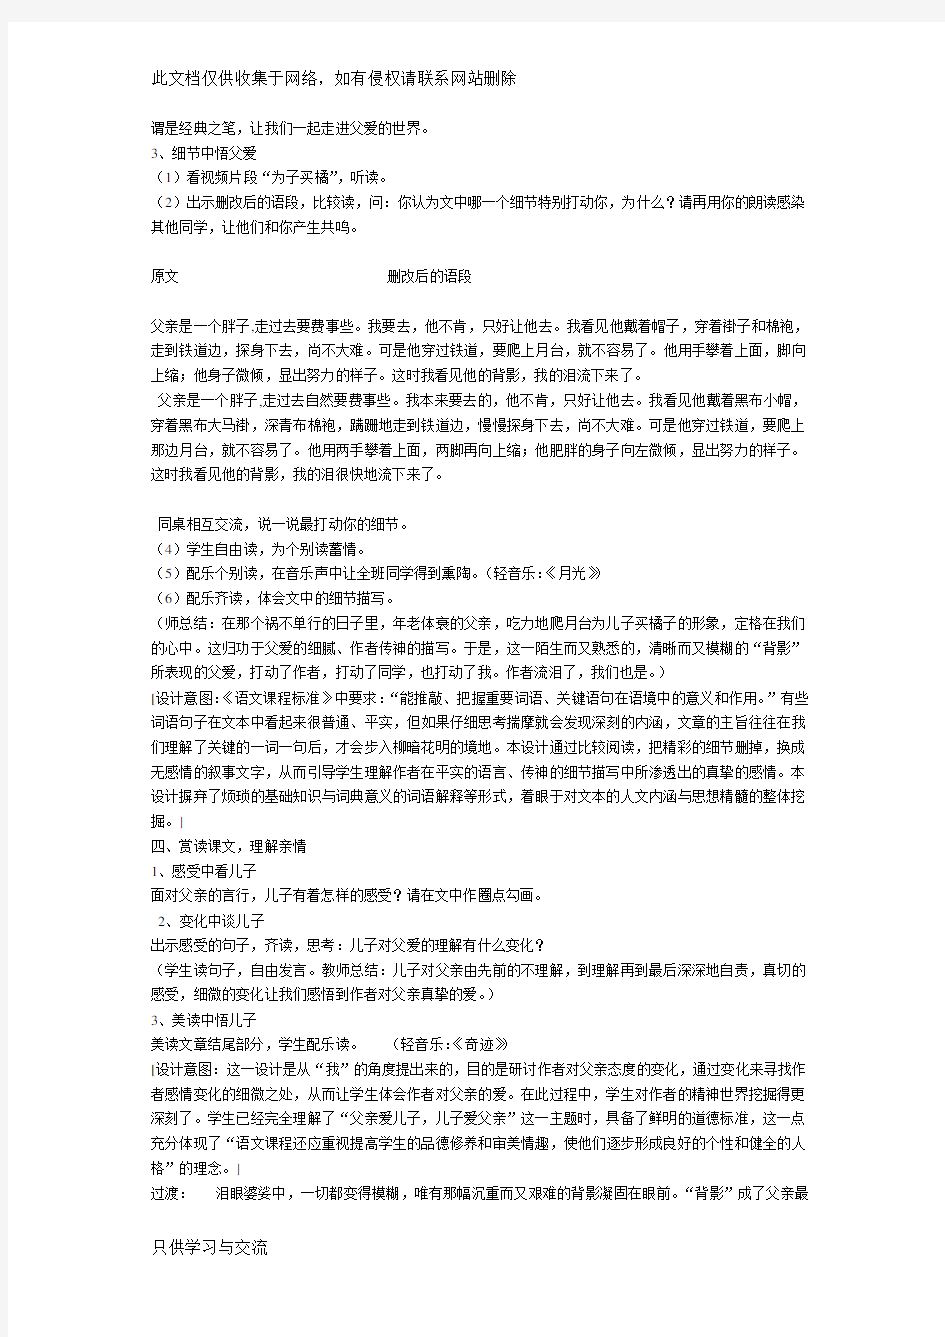 江苏省中学语文优秀教学设计获奖《背影》教案教学内容